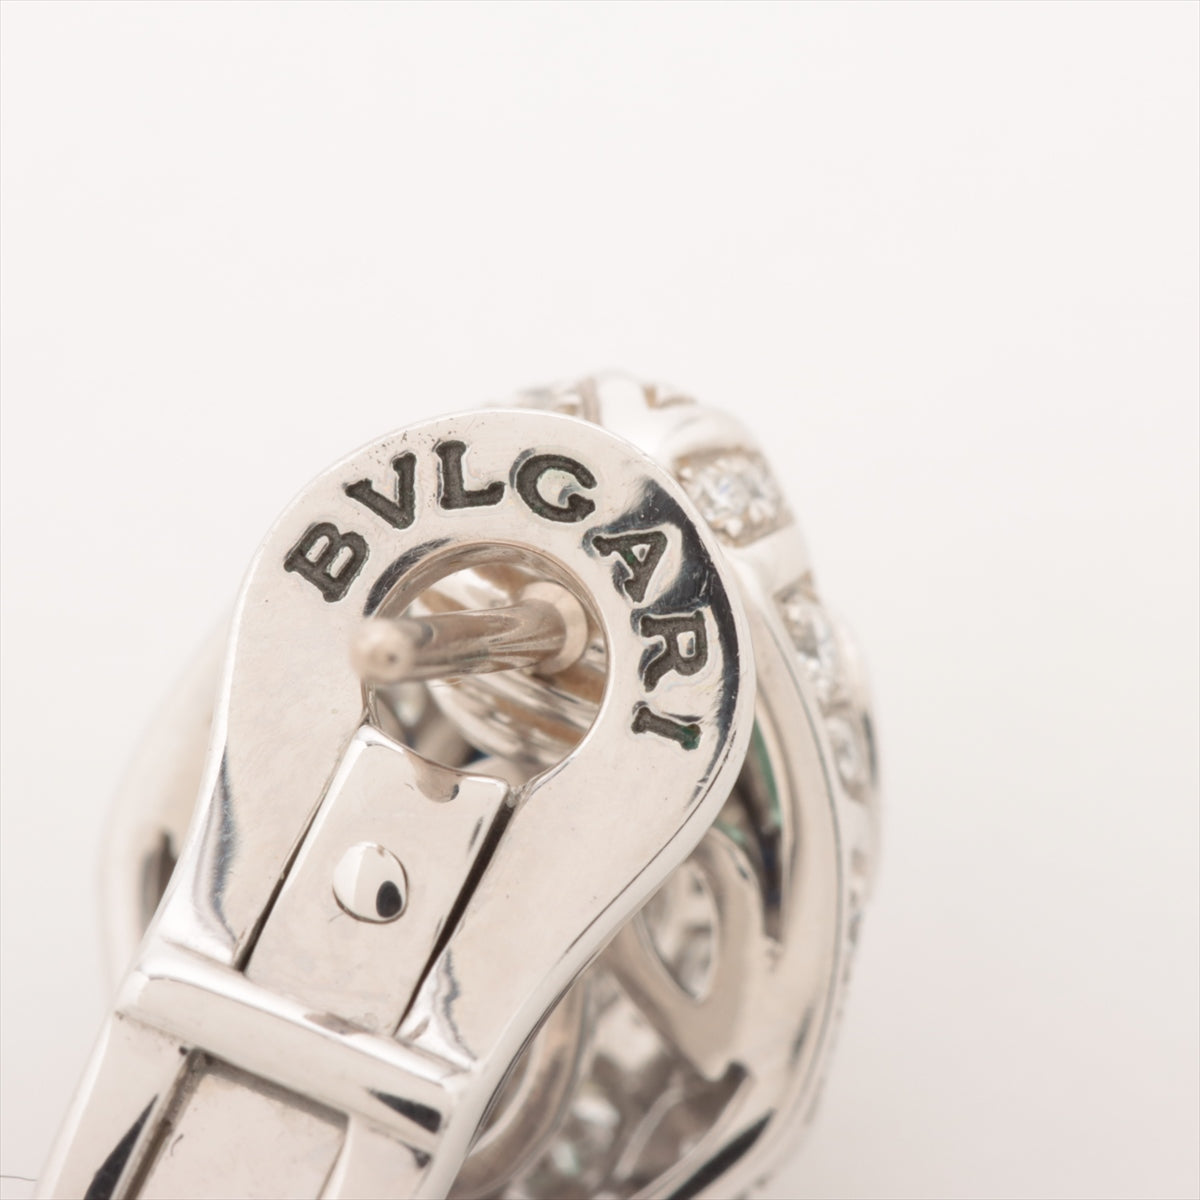 Bvlgari Serpenti diamond Sapphire Emerald Piercing jewelry 750(WG) 10.5g